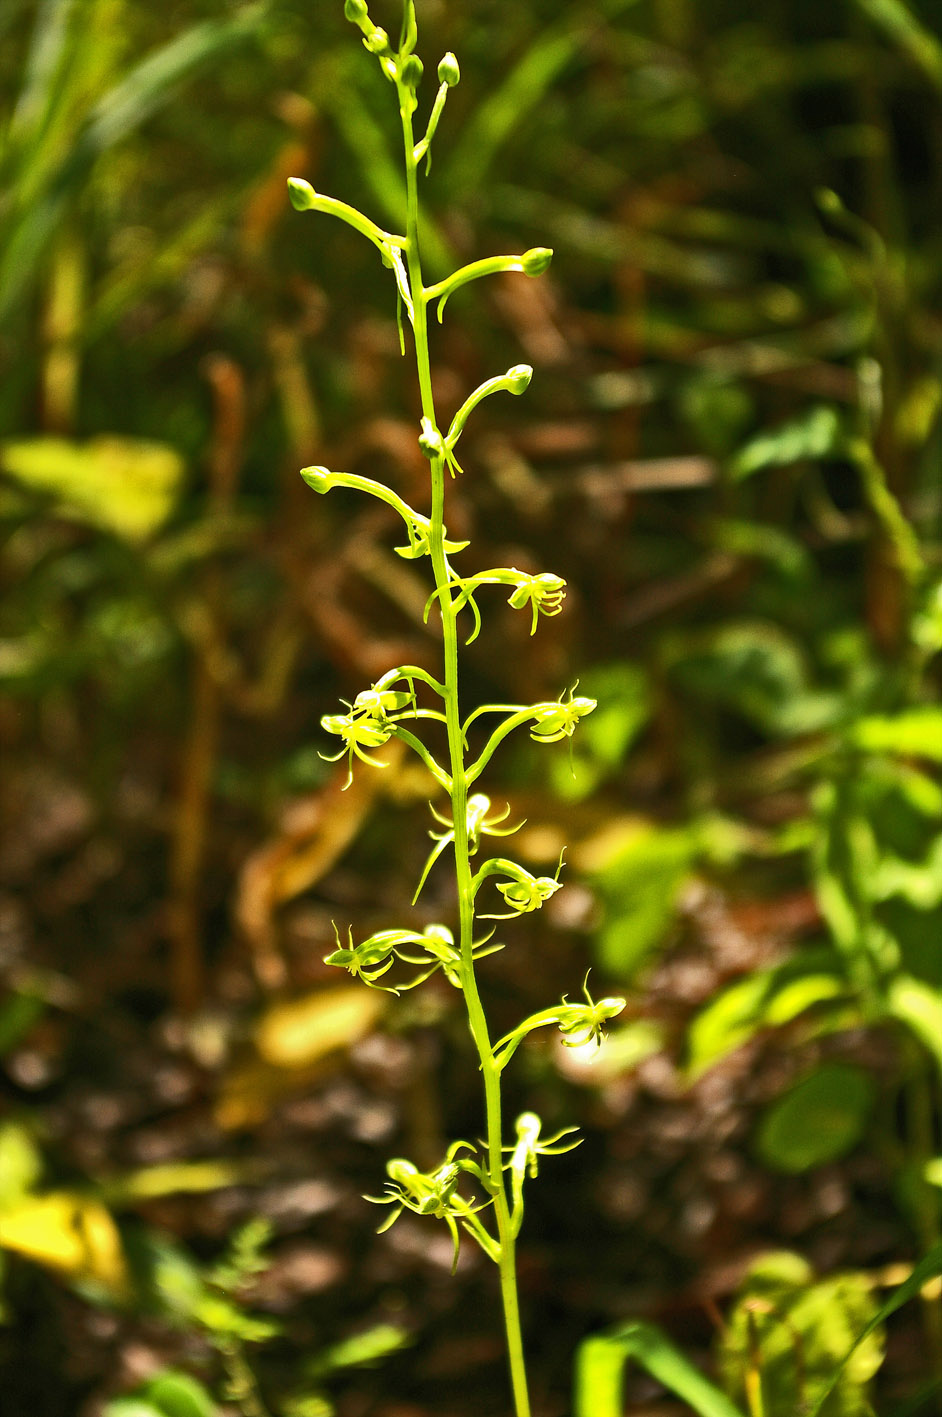 Habenaria malacophylla